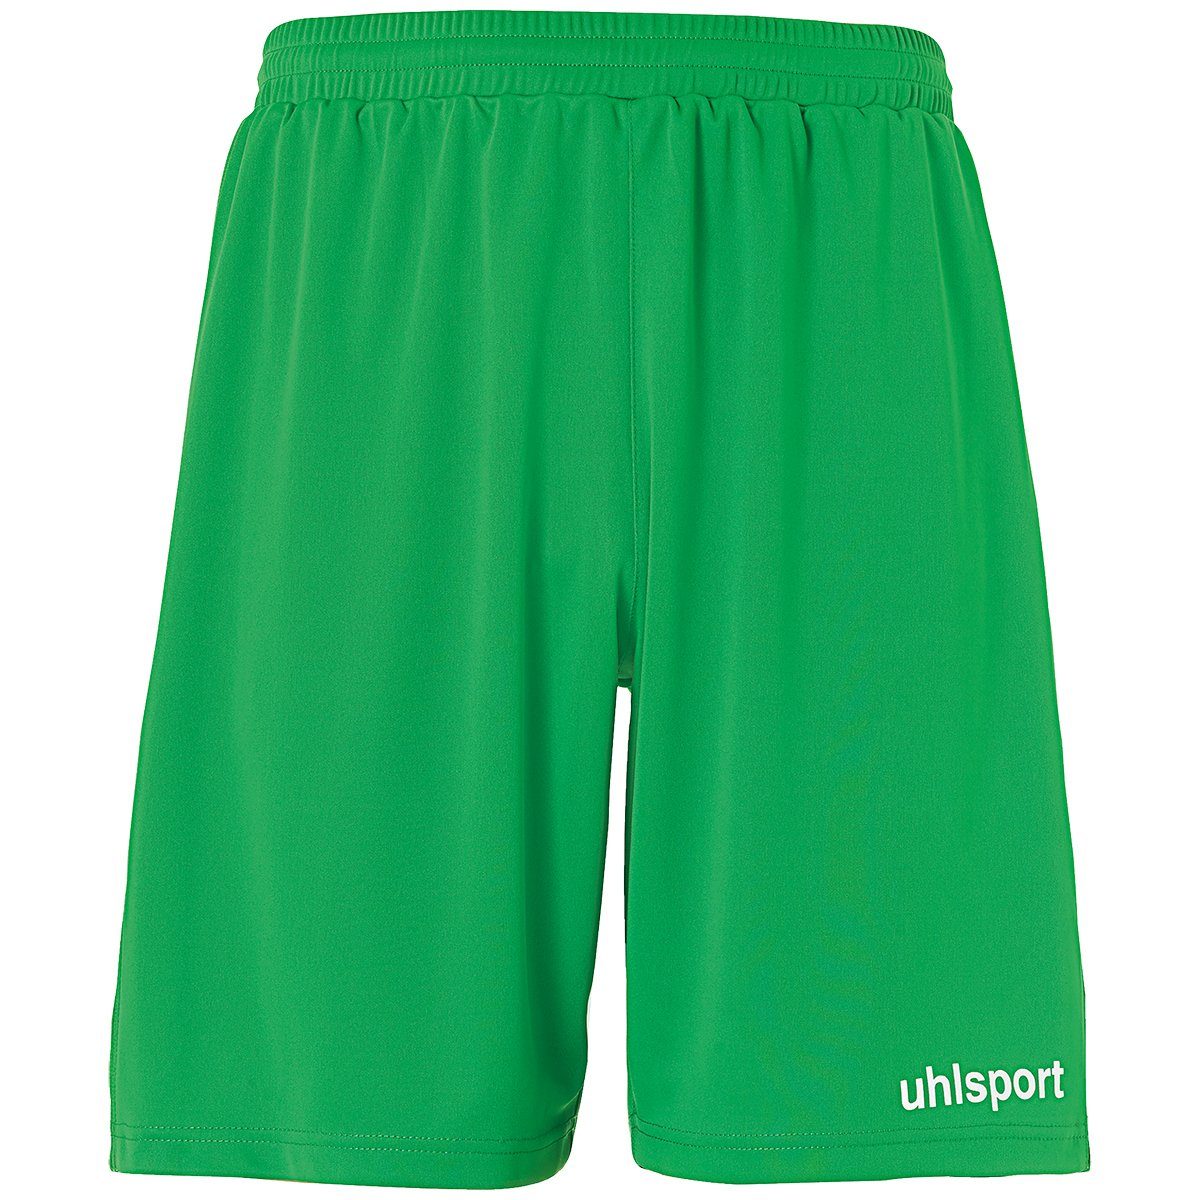 uhlsport Shorts uhlsport PERFORMANCE Shorts grün/weiß SHORTS